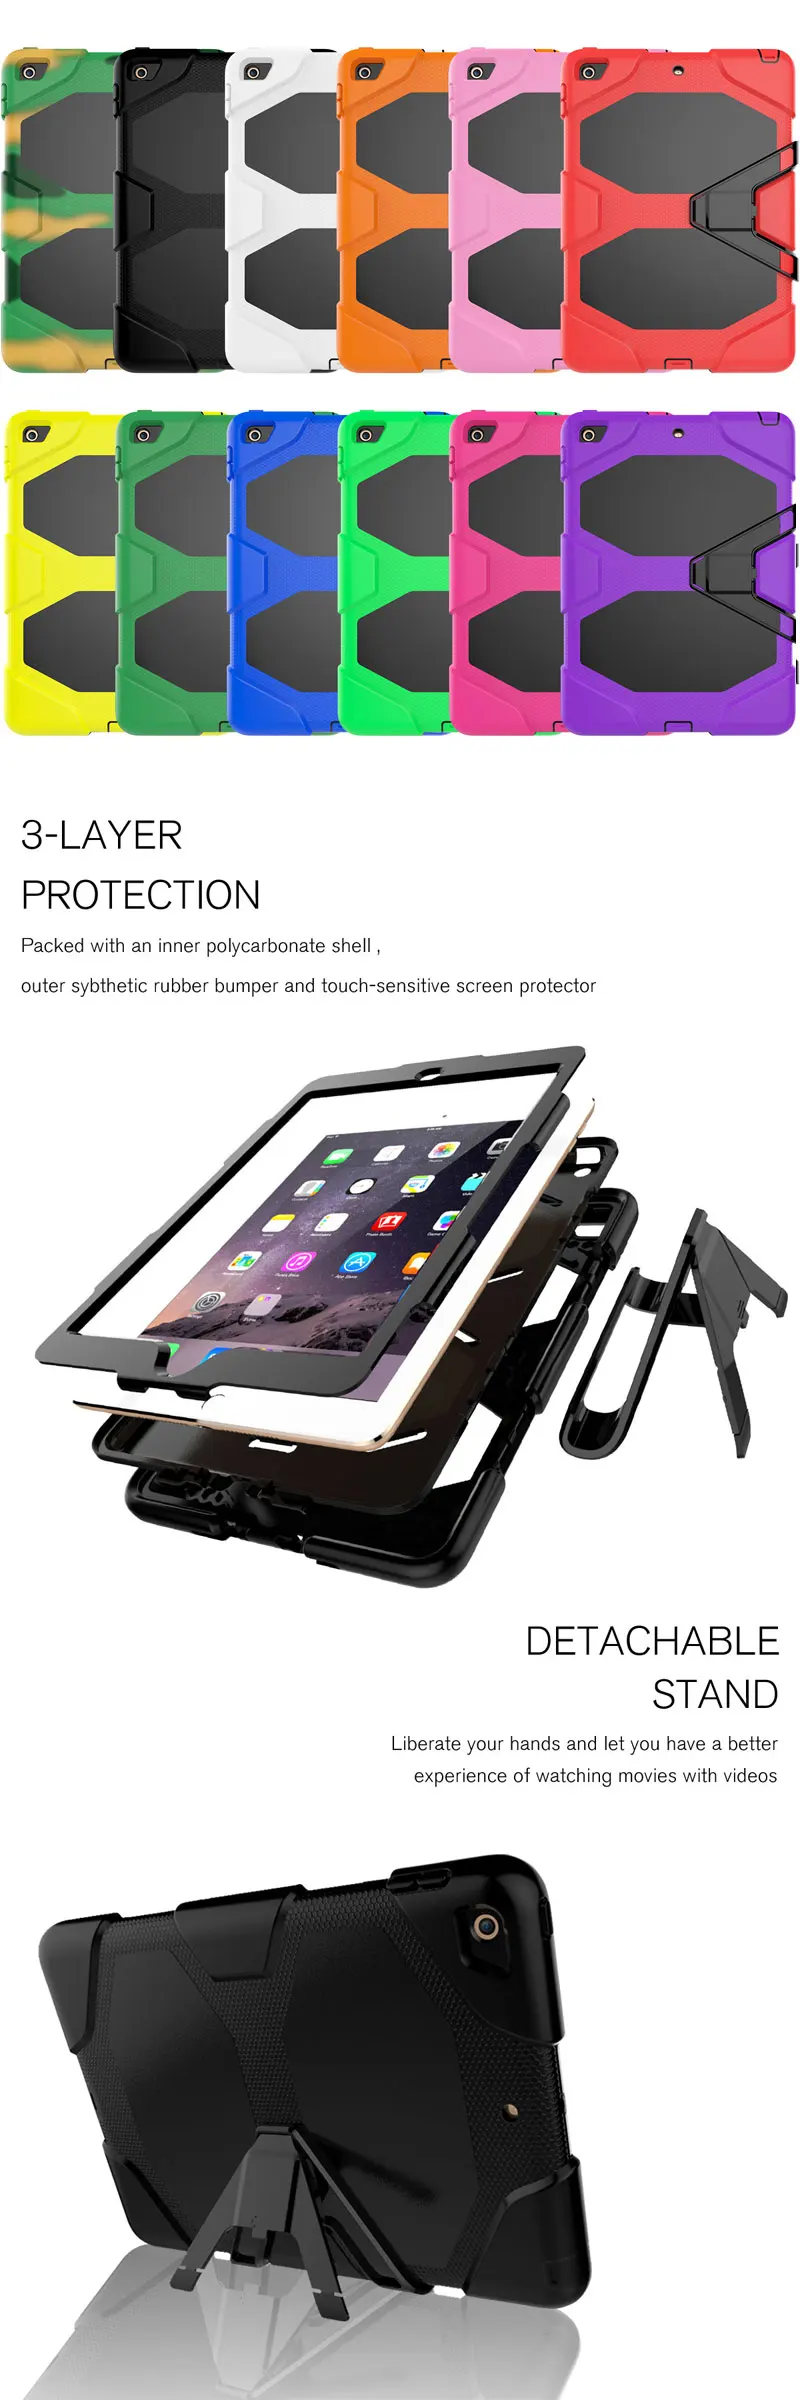 Для iPad 9,7 чехол сверхпрочная Противоударная подставка силиконовая крышка для iPad 9,7 чехол 5th 6th Gen детский безопасный чехол для планшета